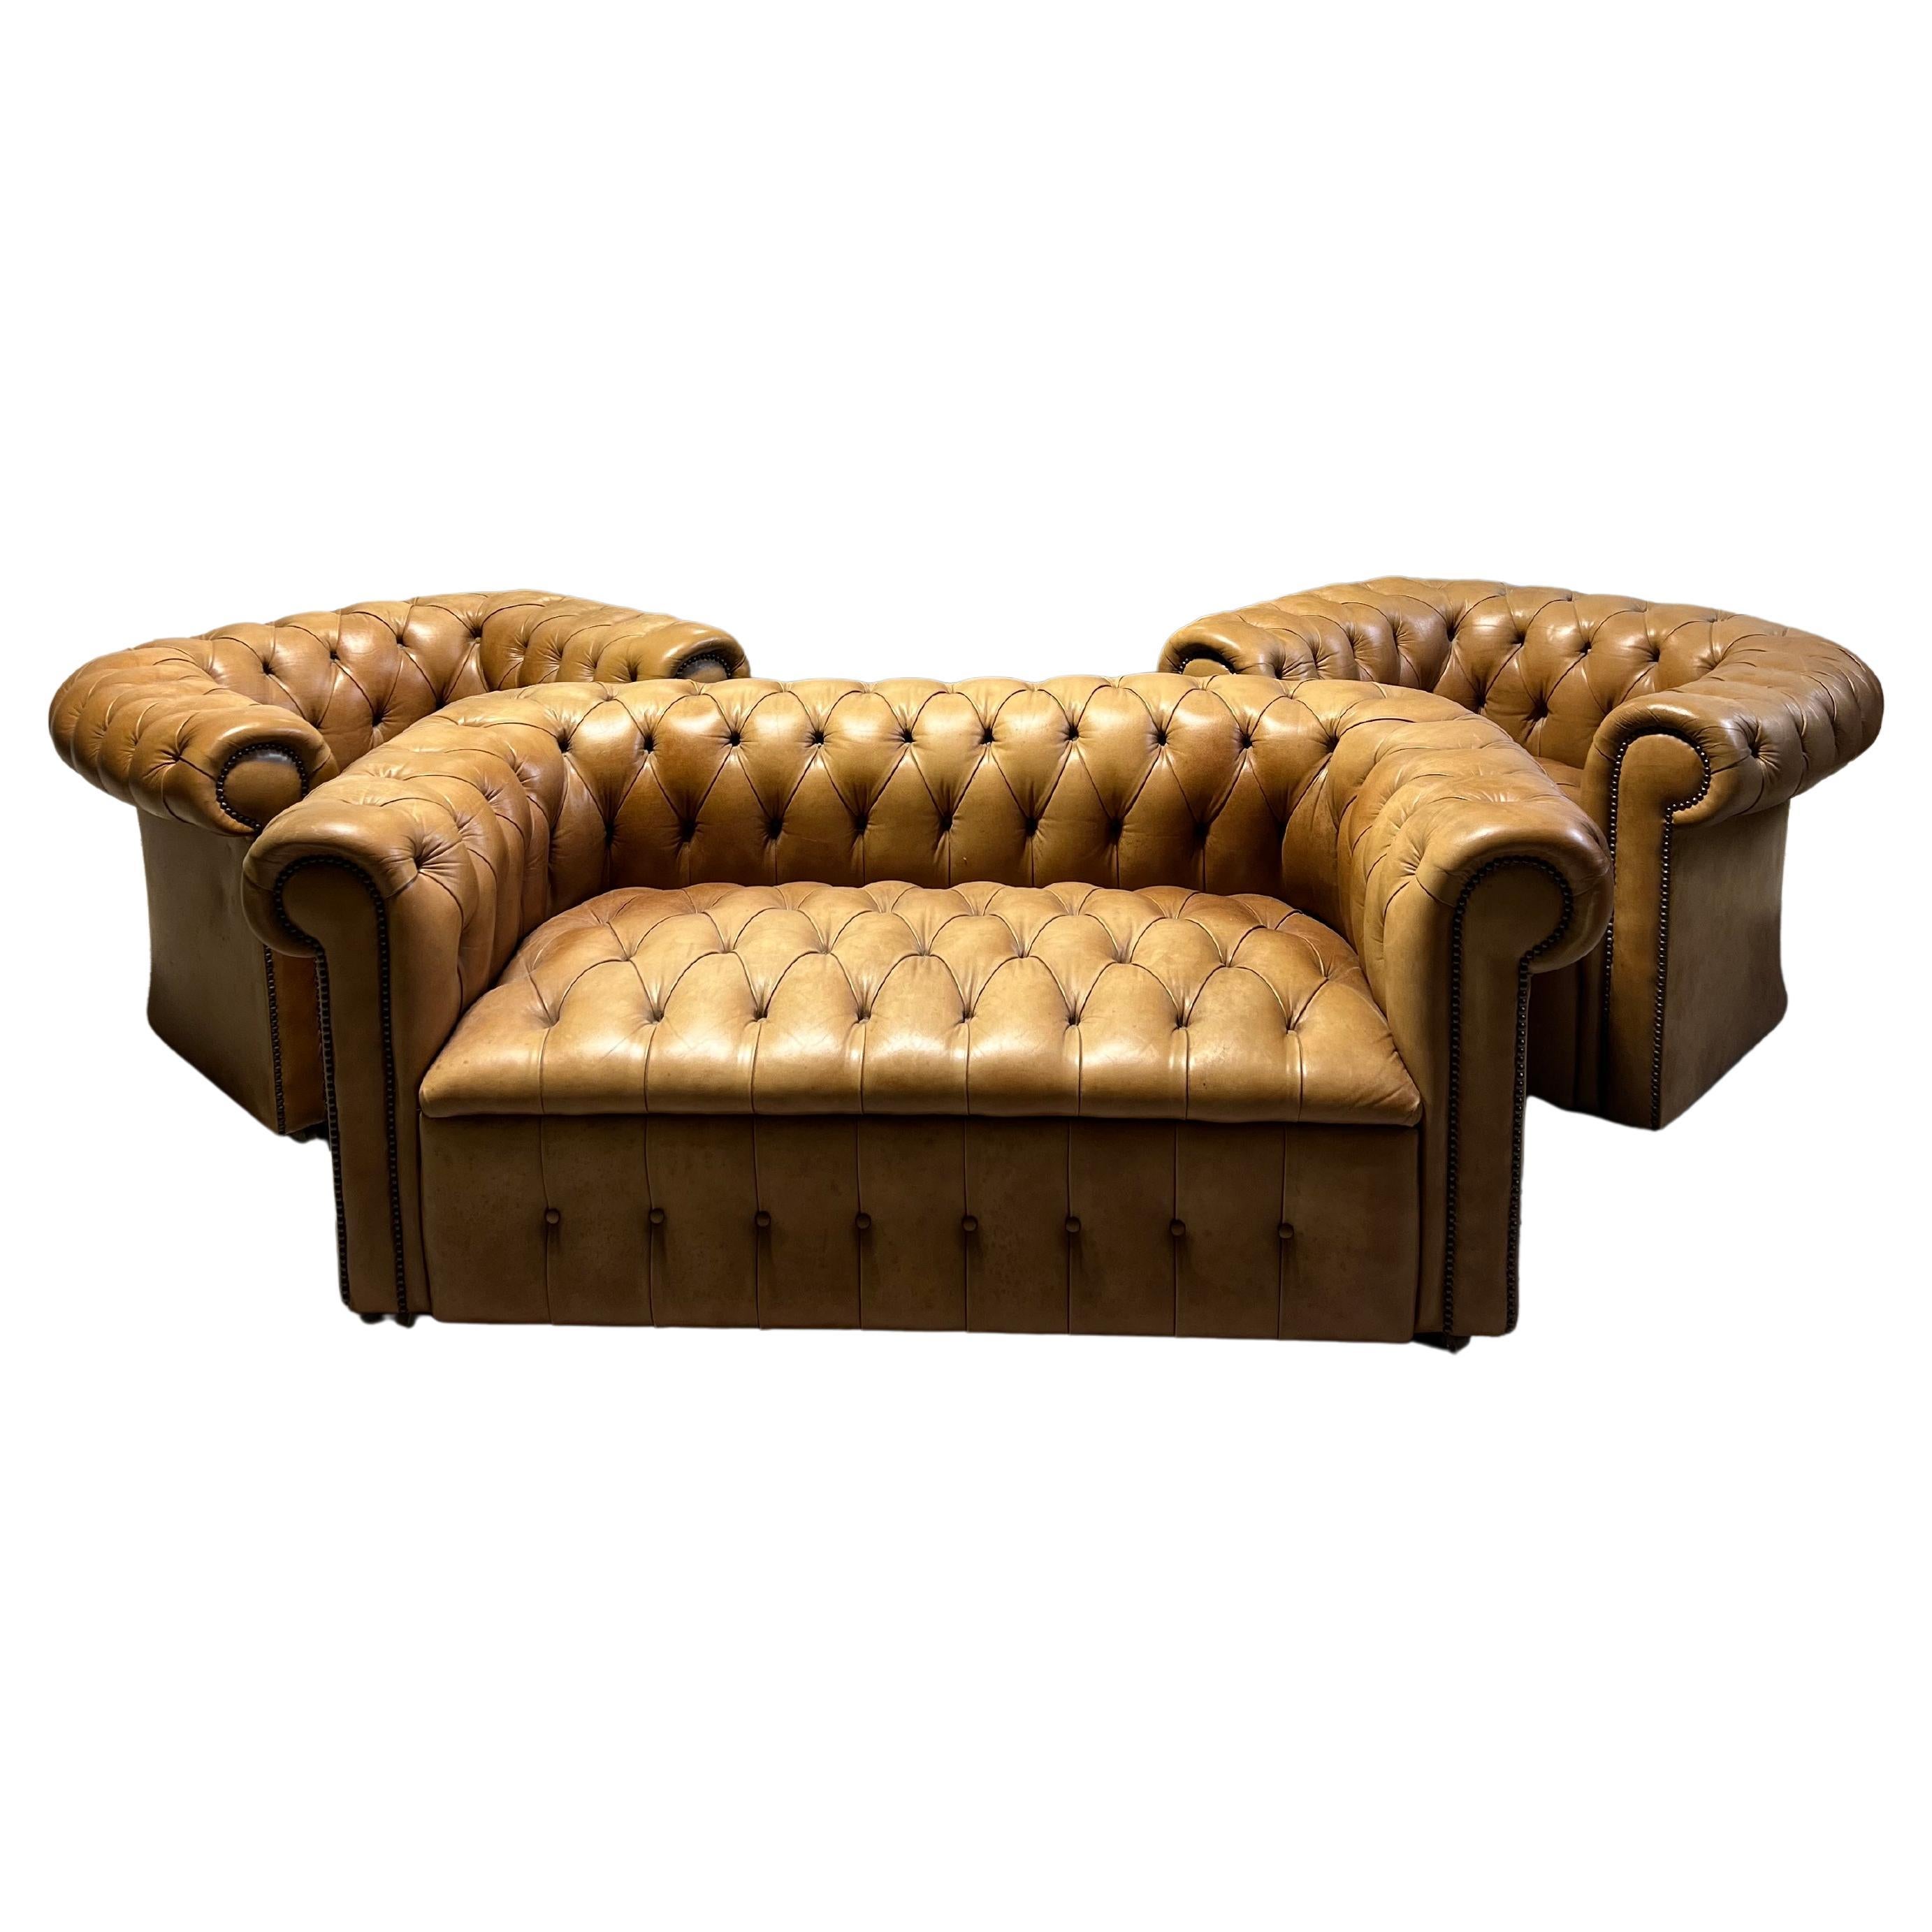 Paire de fauteuils club Chesterfield en cuir du milieu du 20e siècle, très élégante et soignée